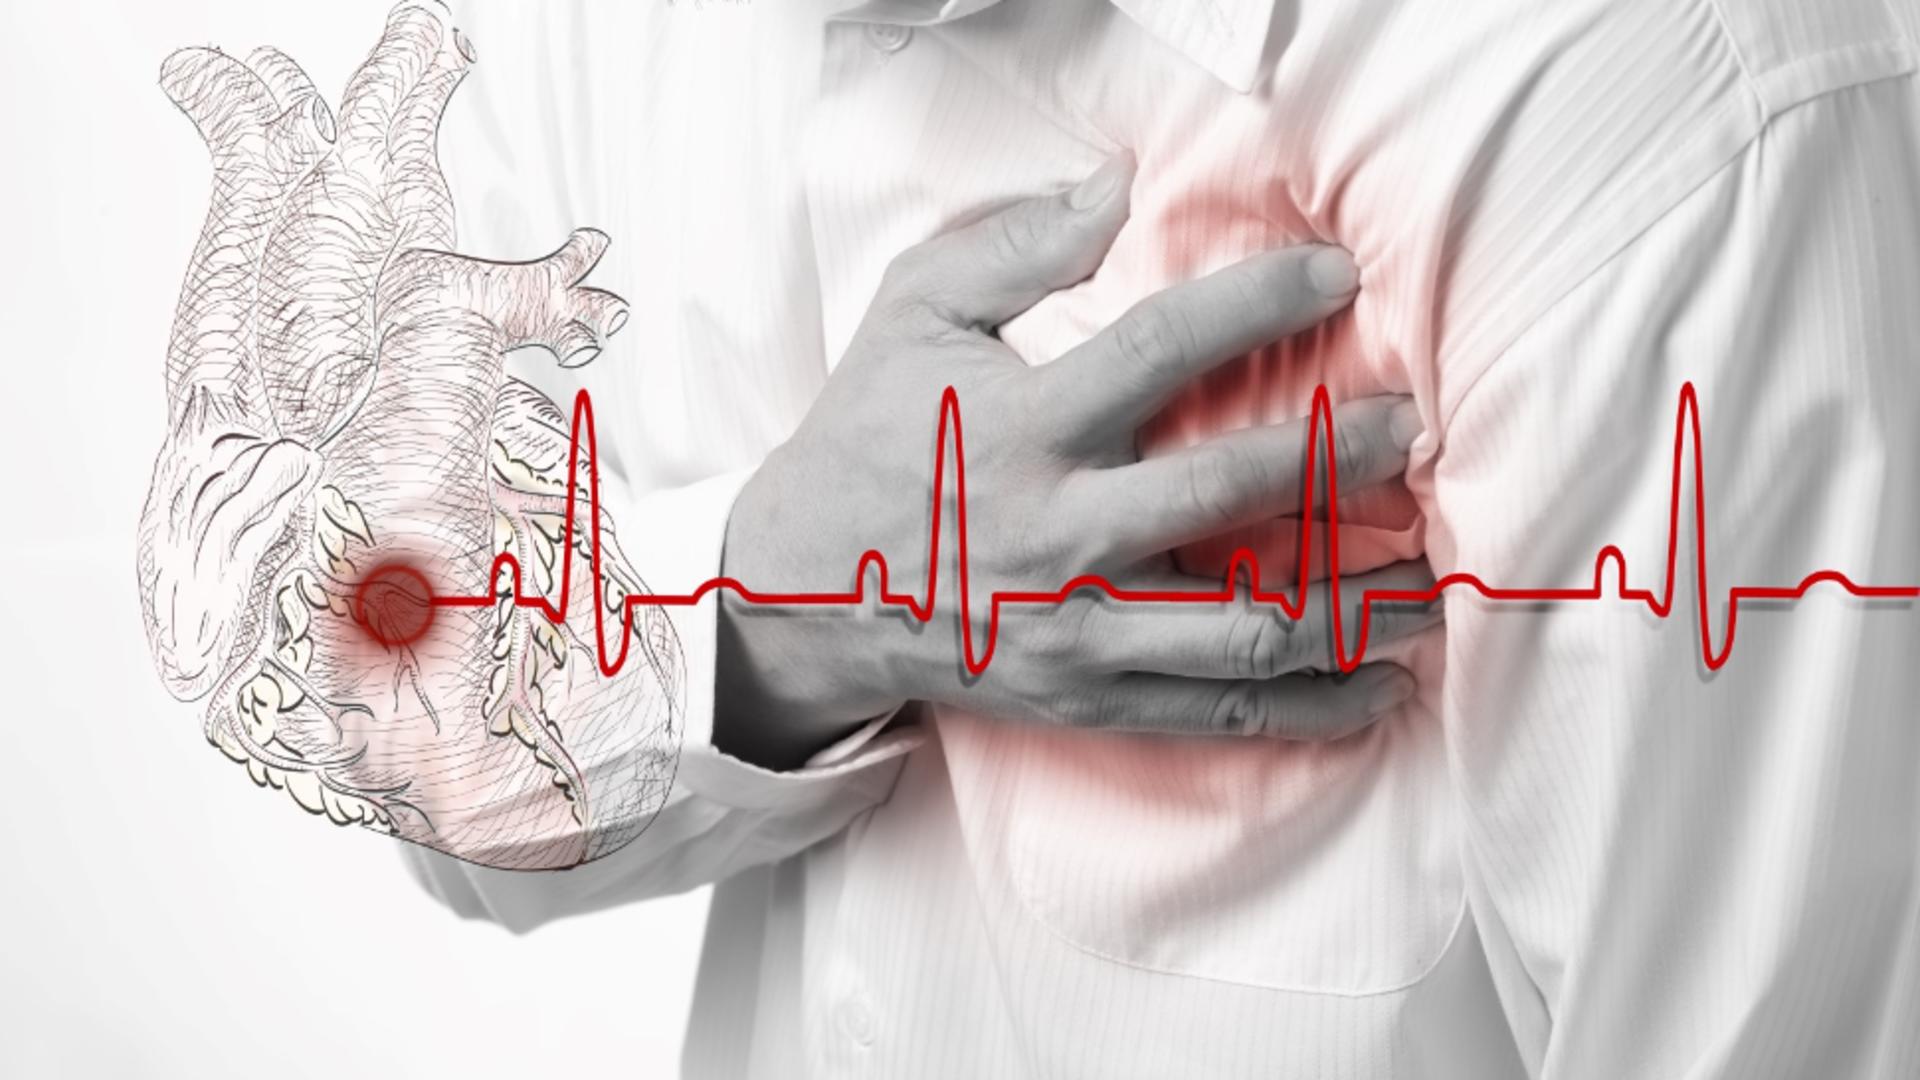 Alertă medicală: Diabeticii pot face stop cardiac brusc de la unele medicamente comune